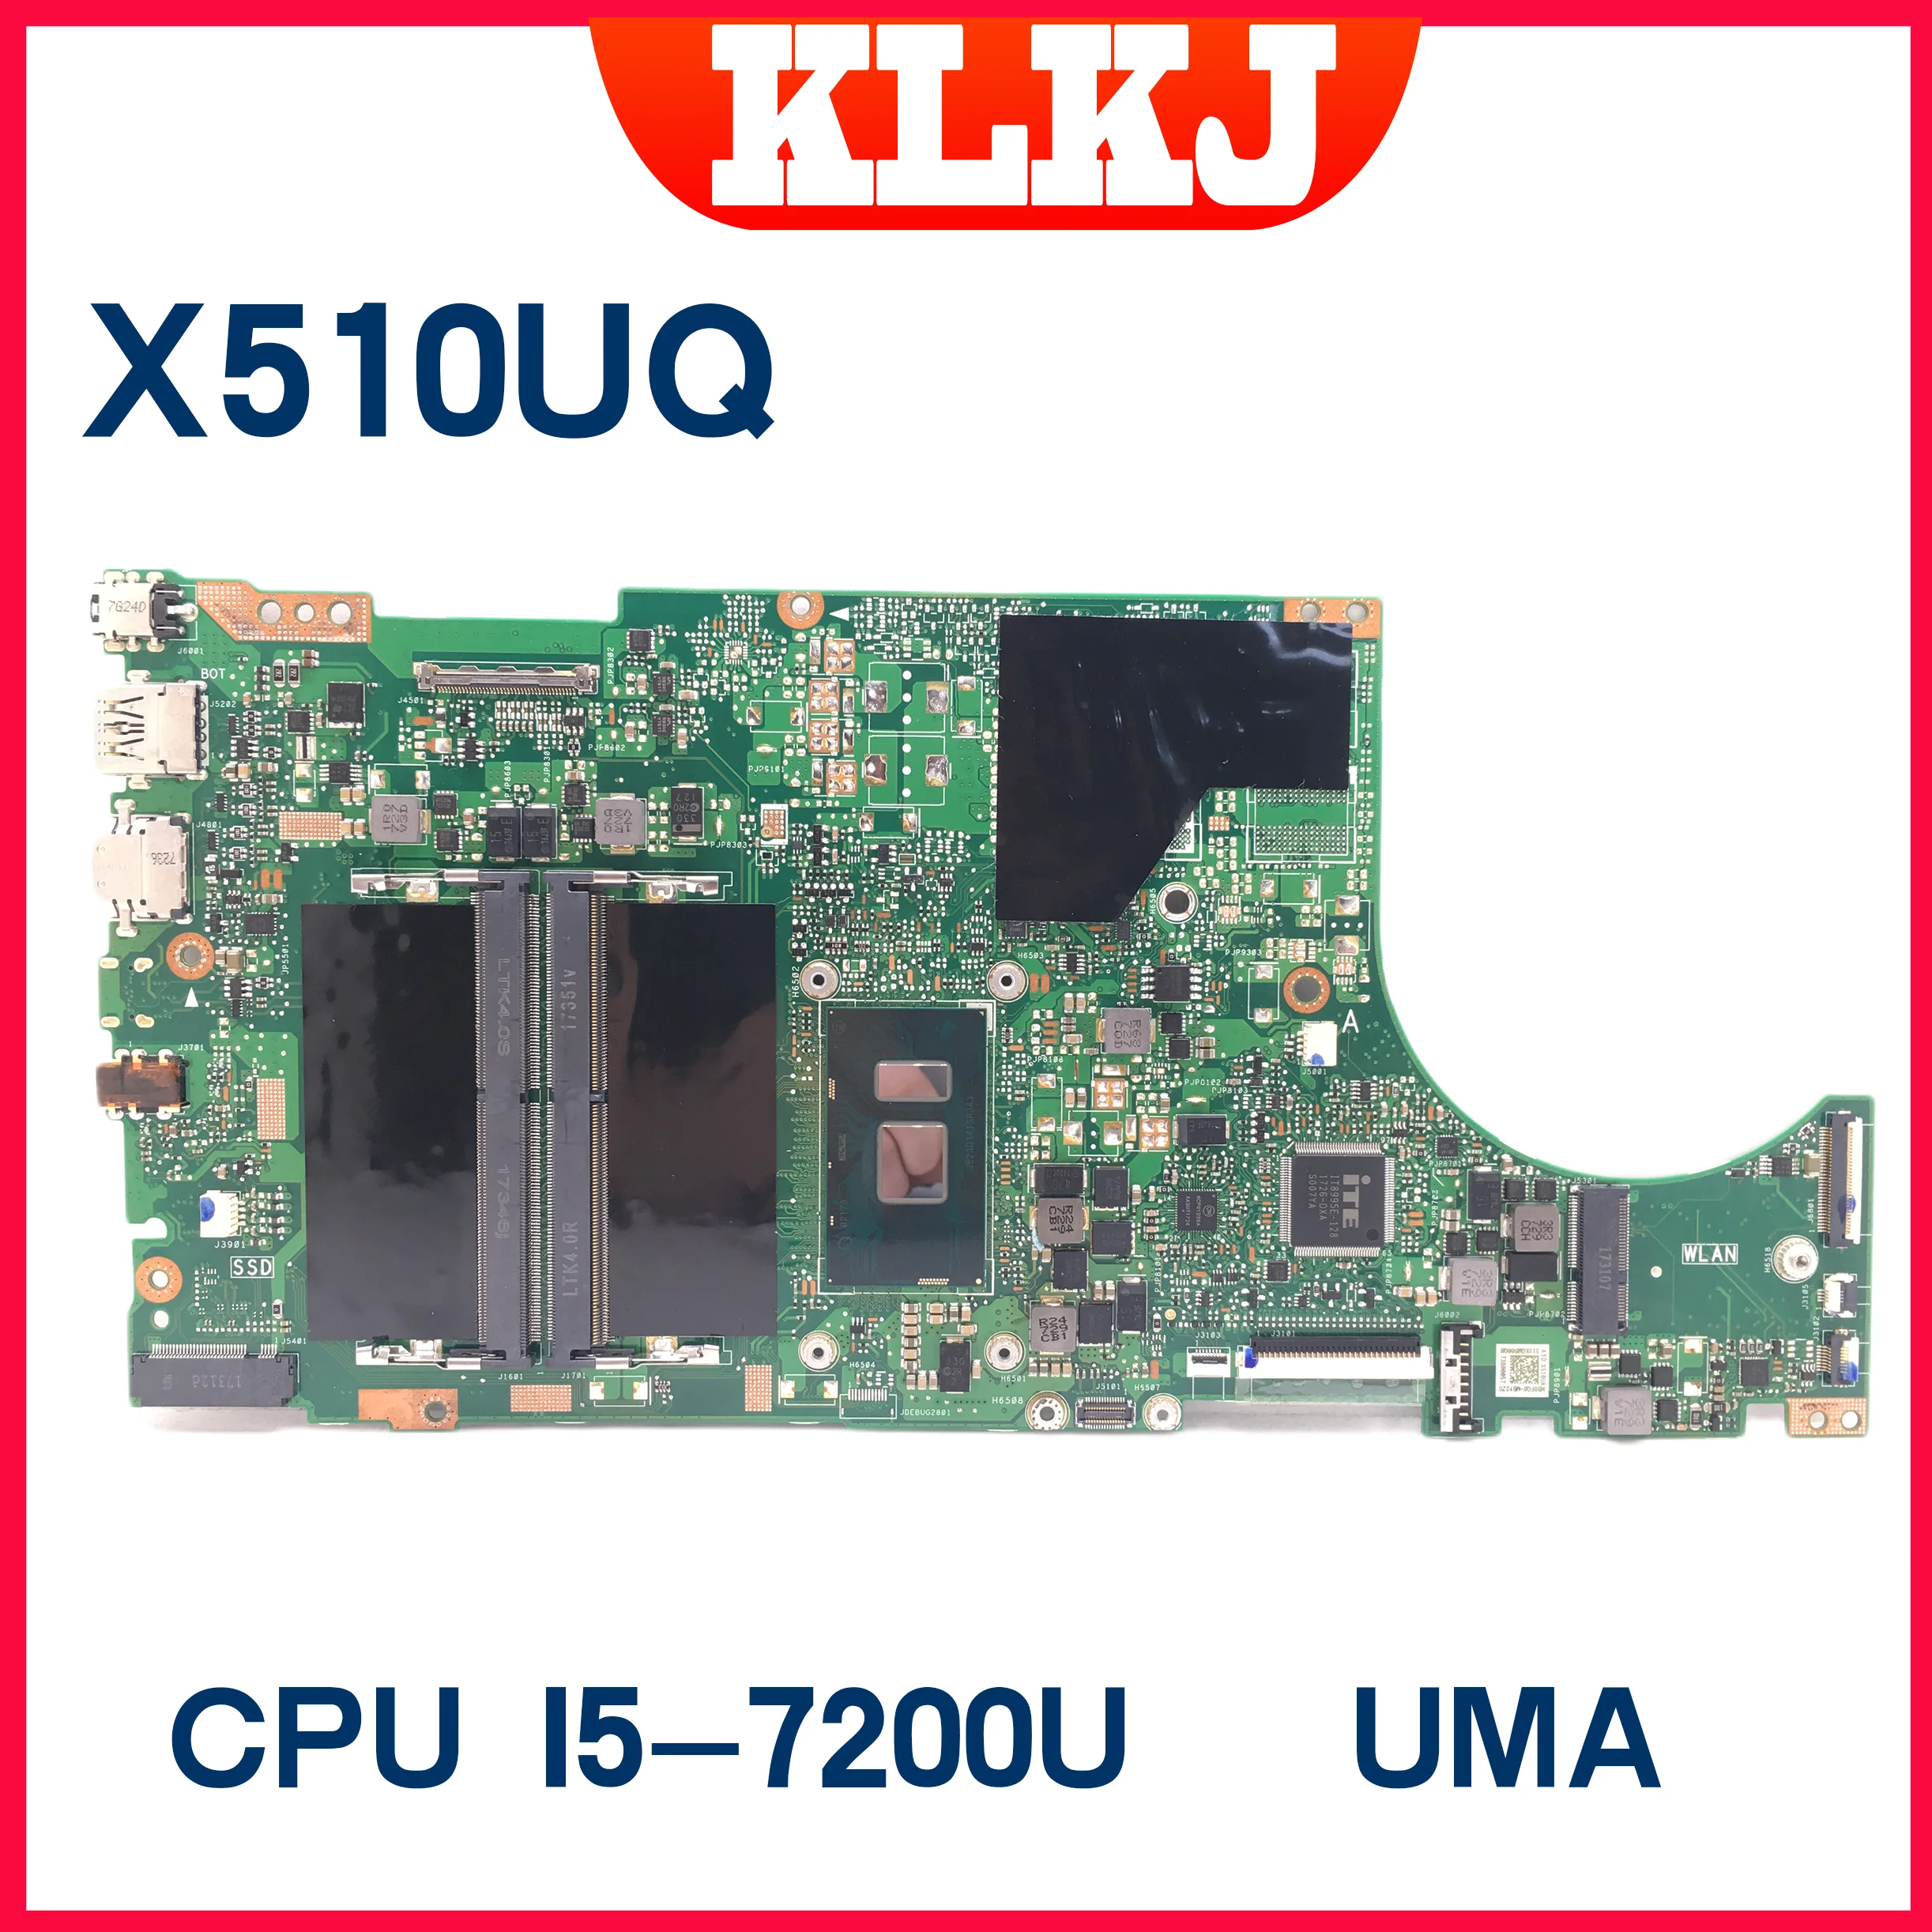 X510UA Motherboard For ASUS Vivobook 15 A510 X510U X510UQ X510UN X510UAR Laptop Mainboard W/I3-7100 I5-7200 8250 I7-7500 8550U